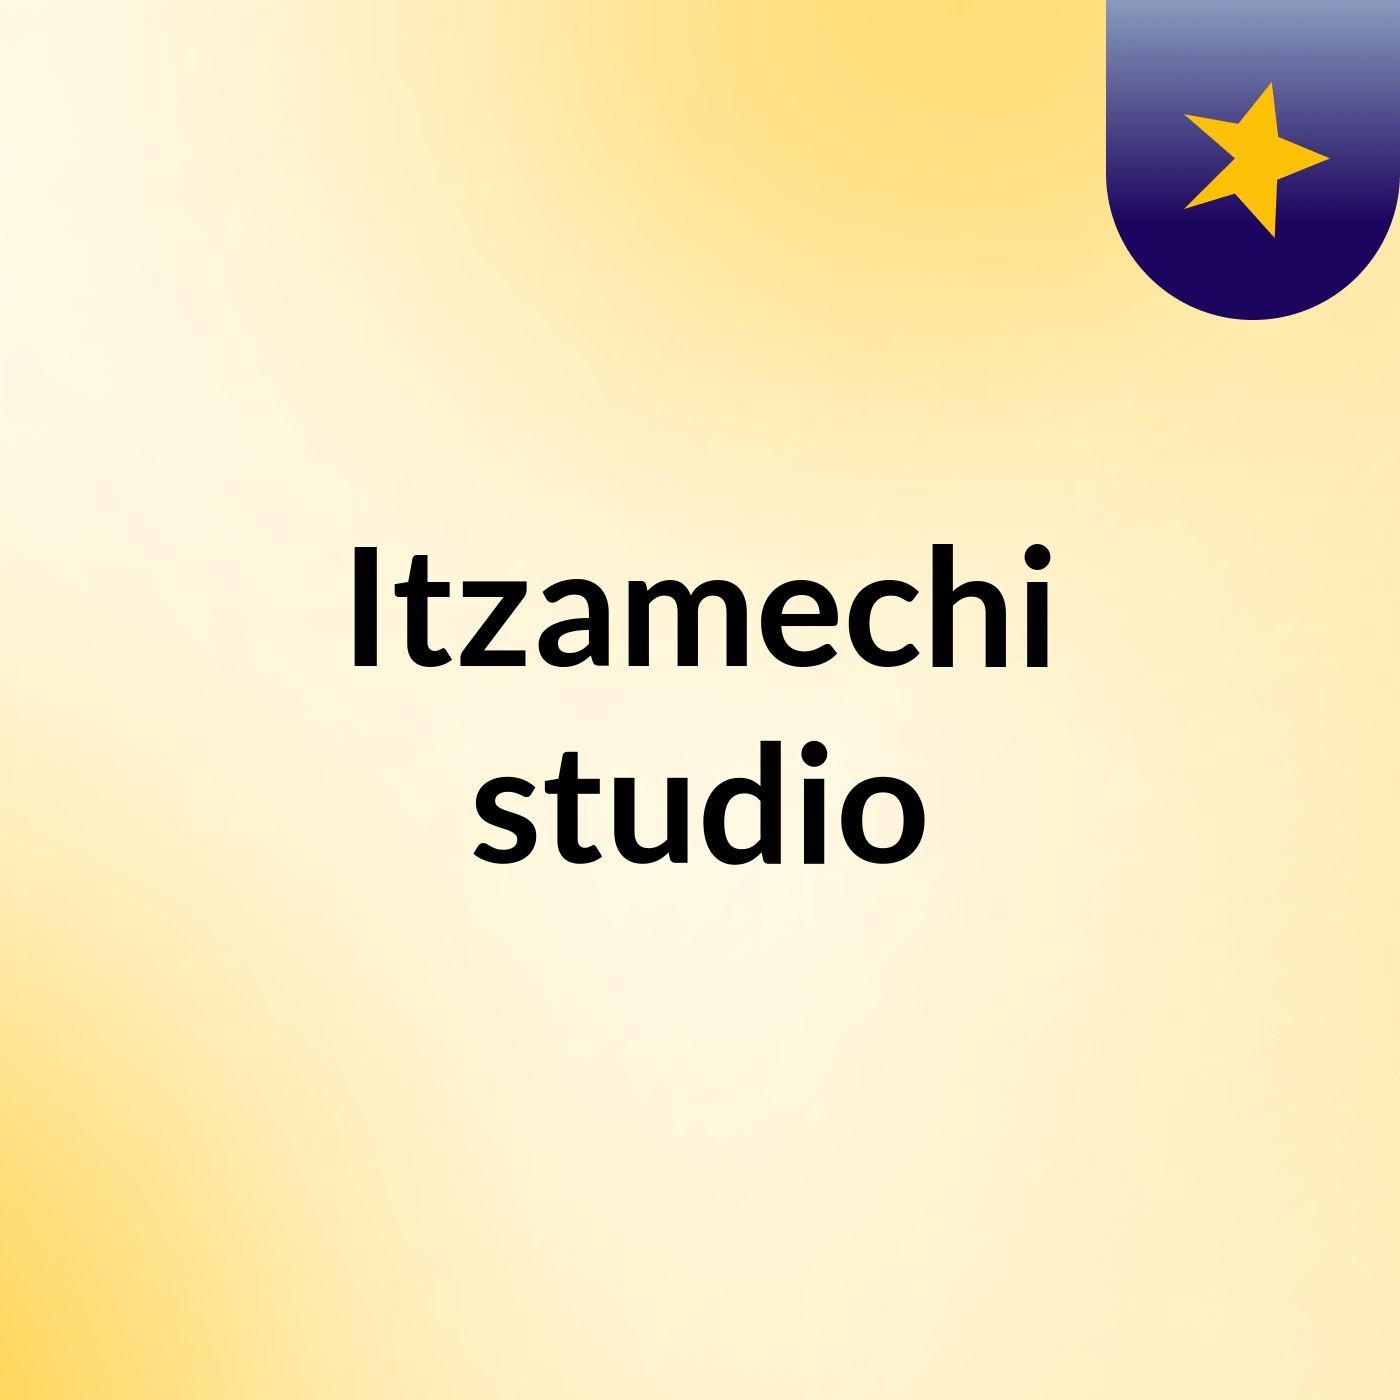 Itzamechi studio